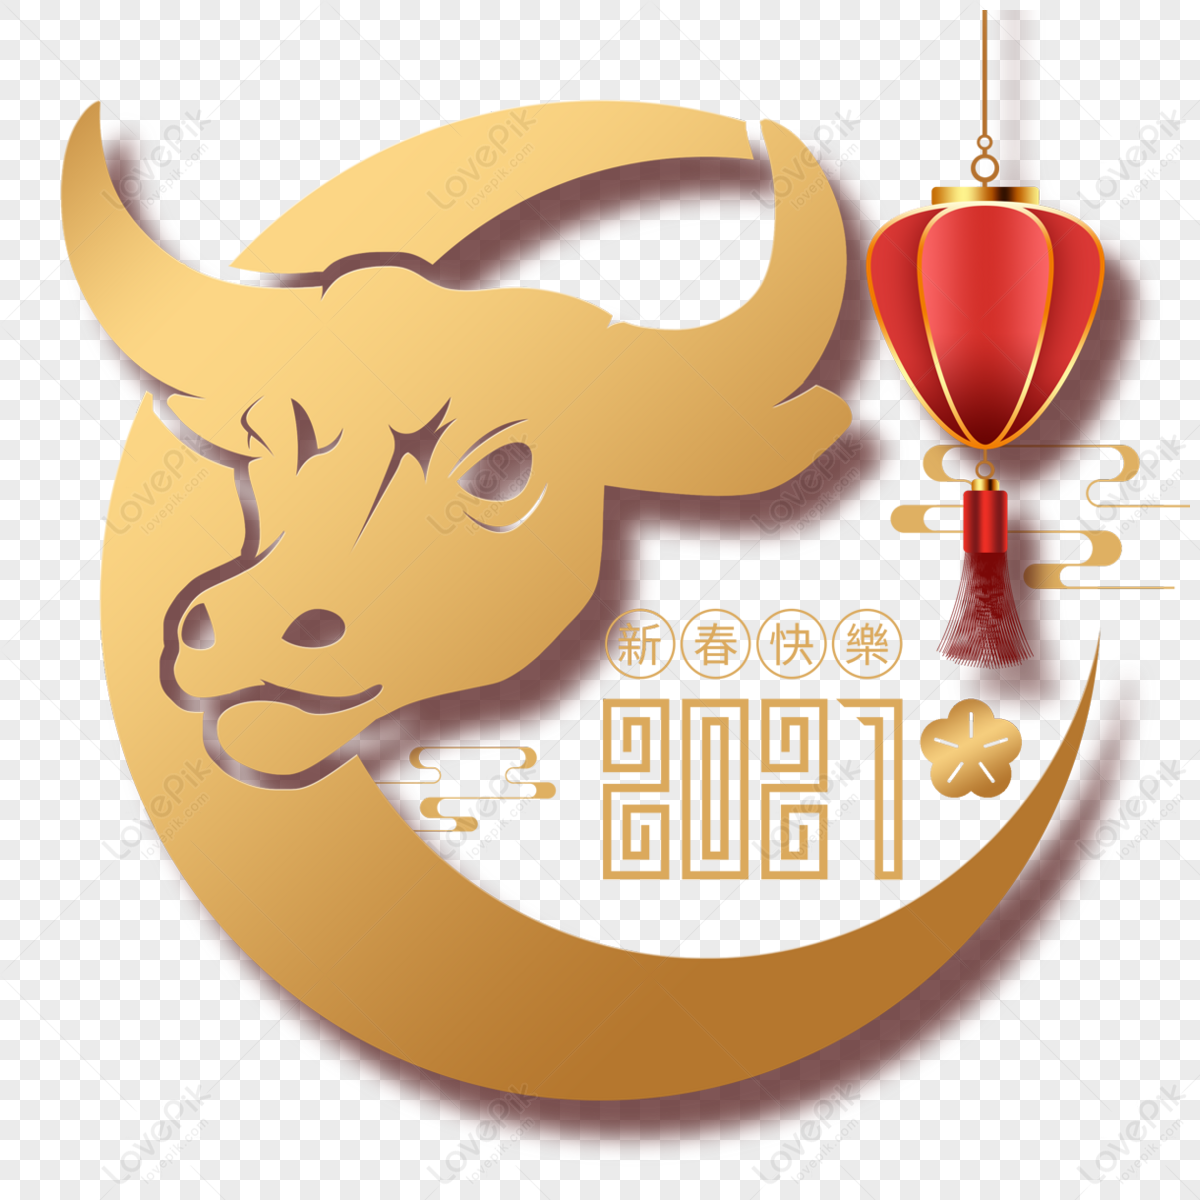 Premium Vector | Elegant bull logo for restaurants